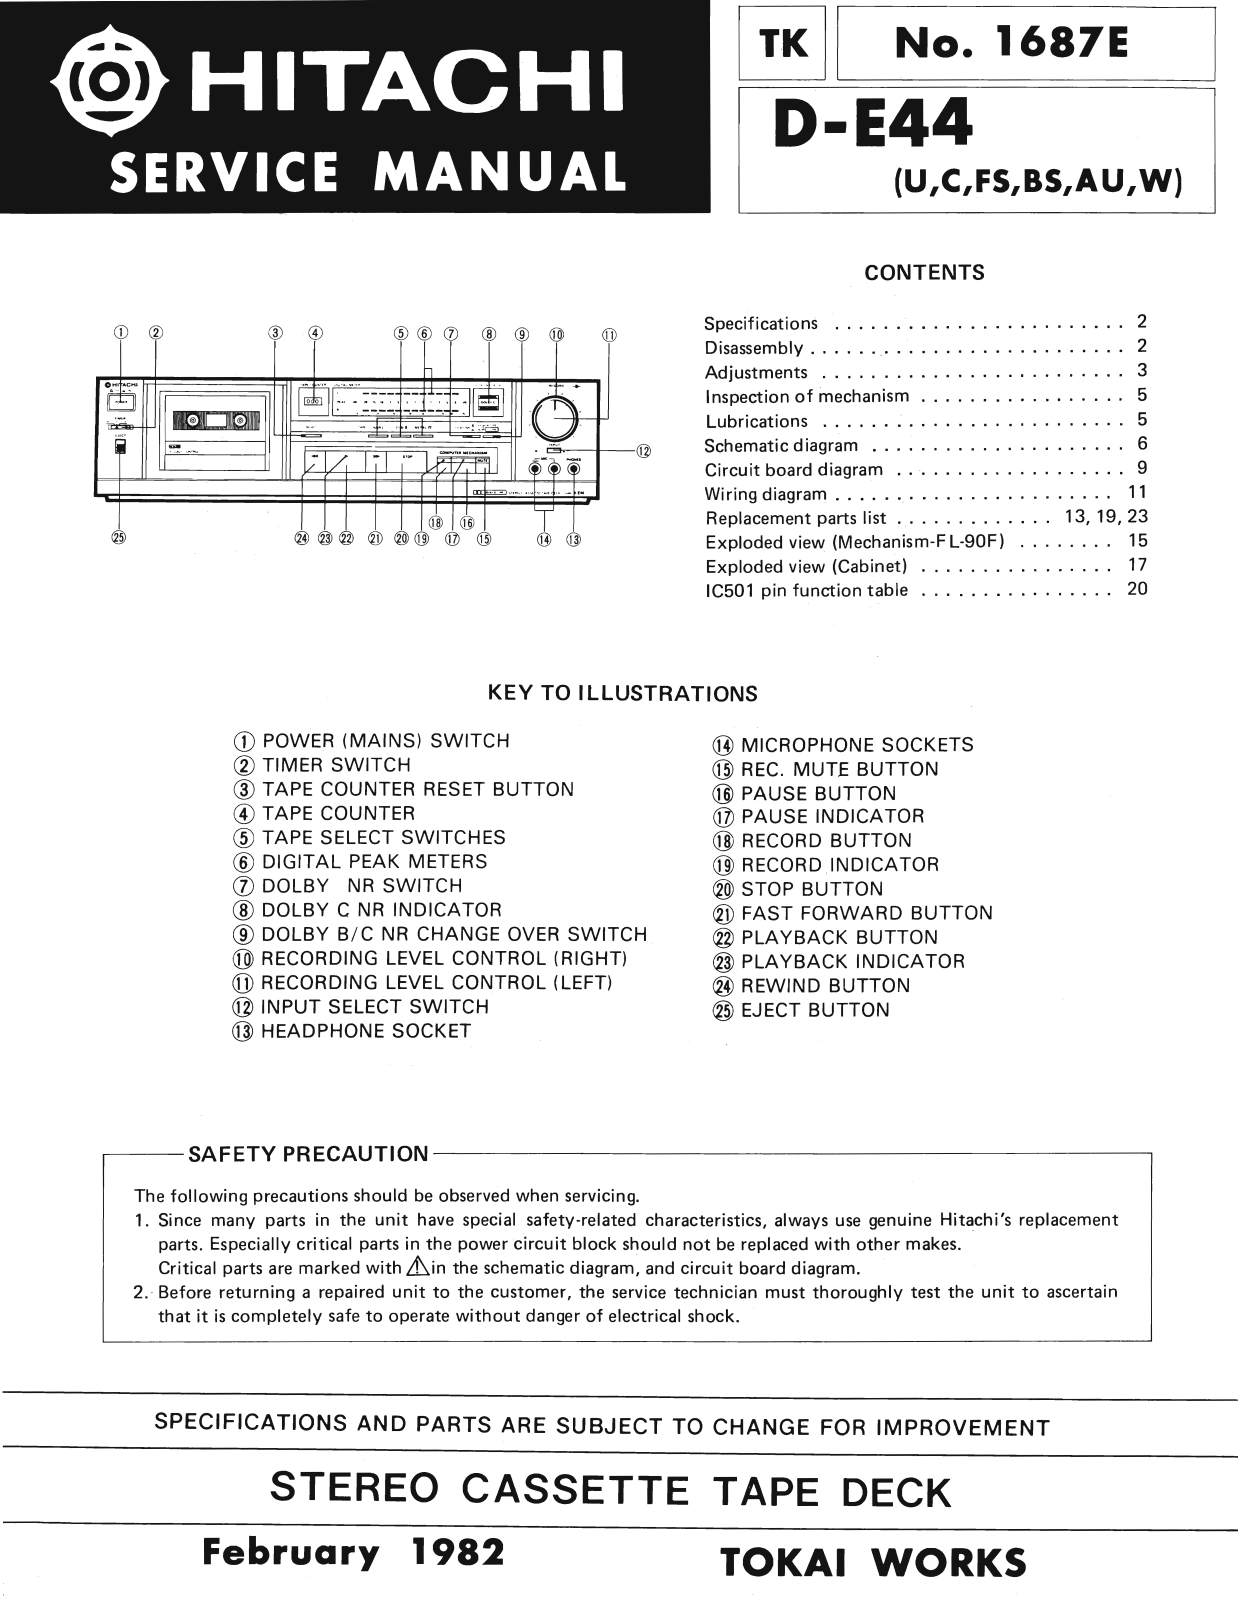 Hitachi DE-44 Service Manual